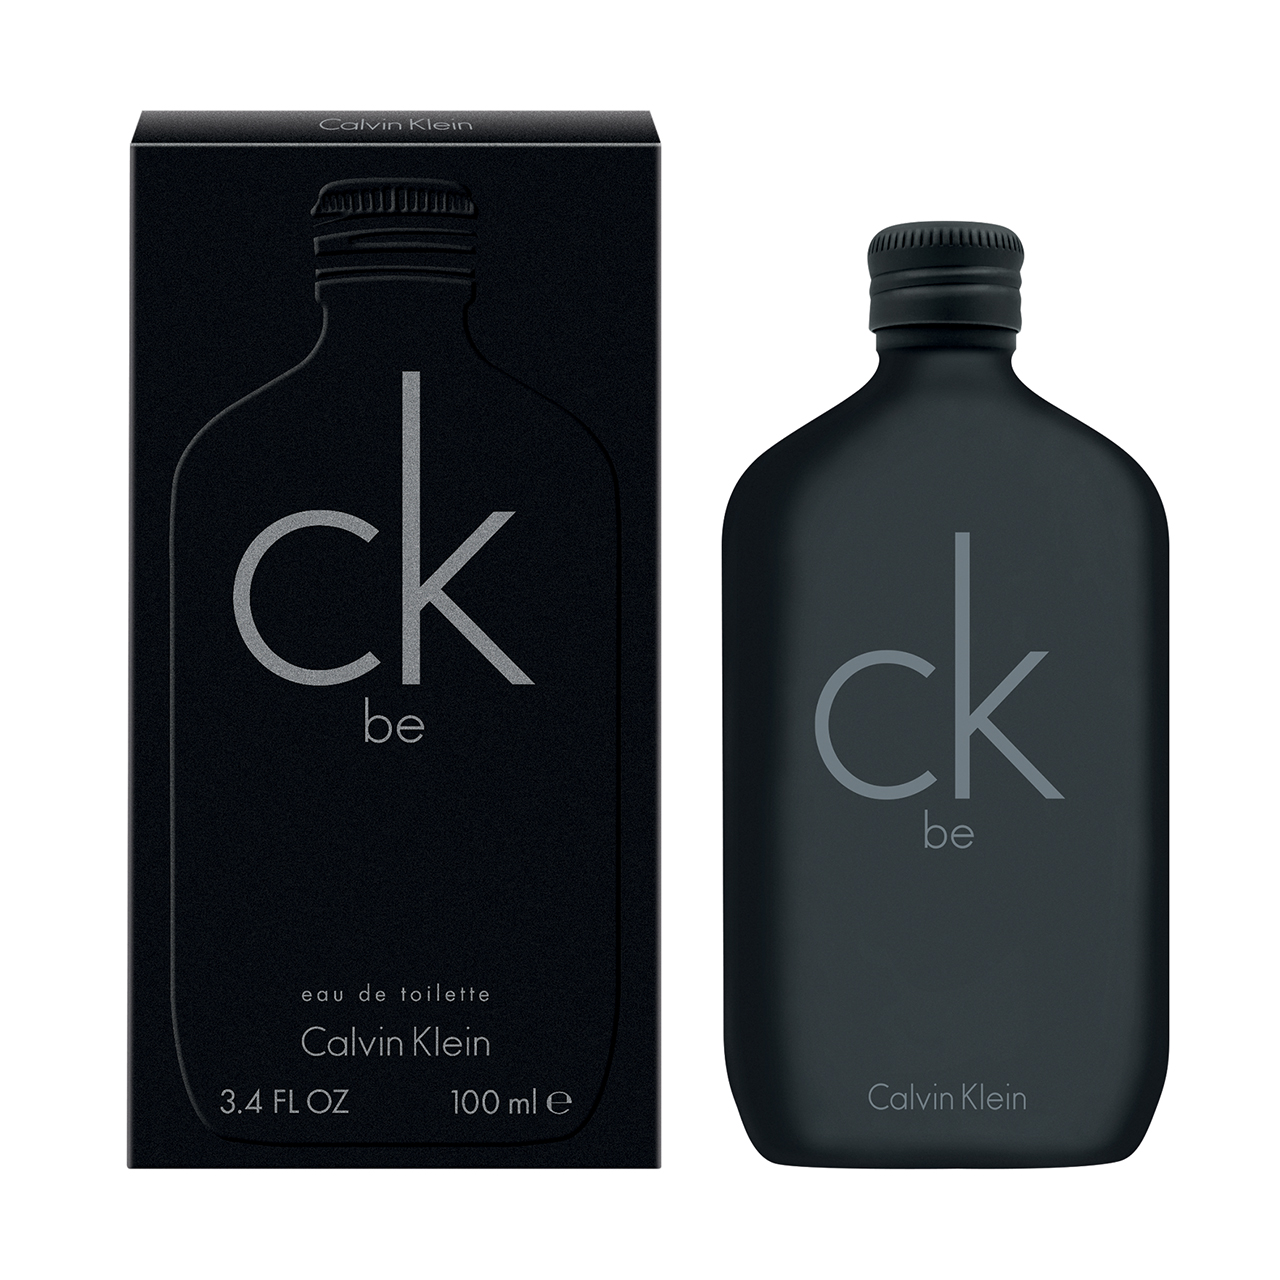 Calvin Klein CK Be EDT 100ml Spray